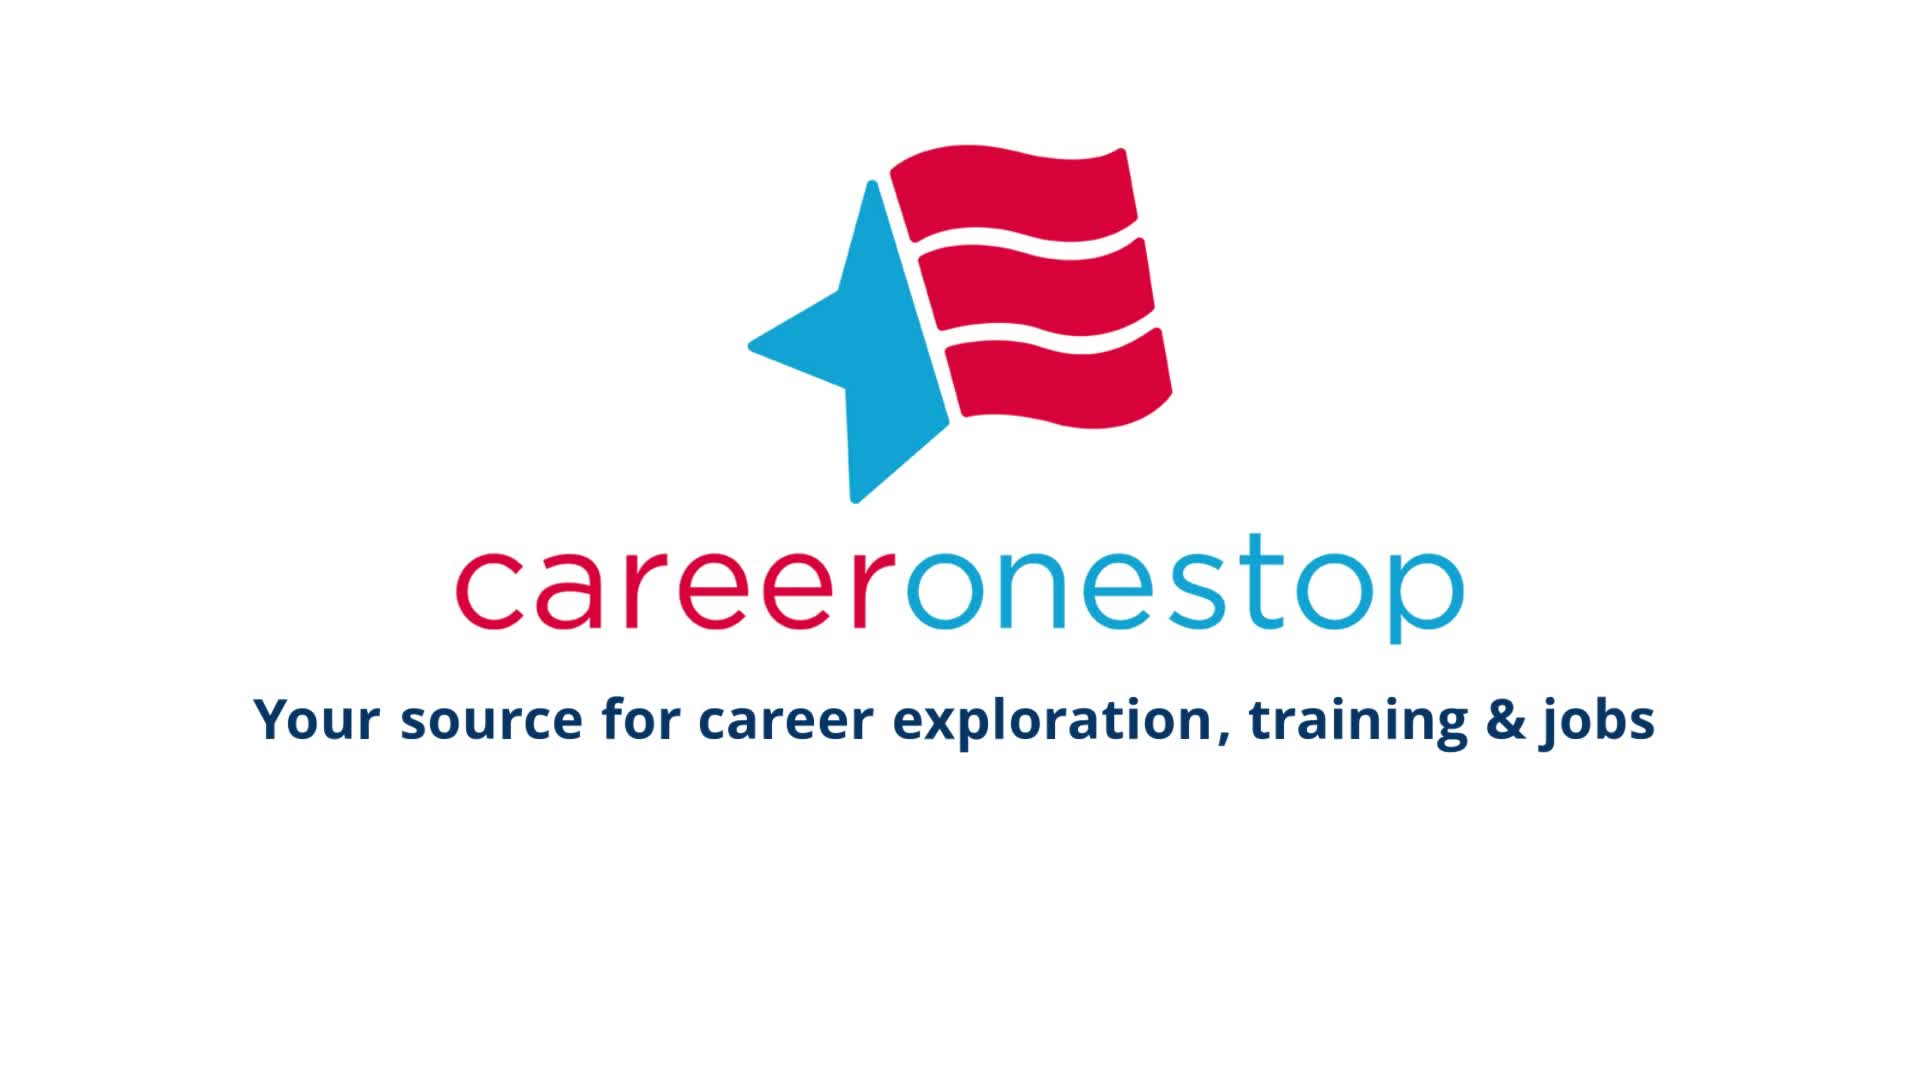 CareerOneStop Overview - Workforce Professionals Video ...